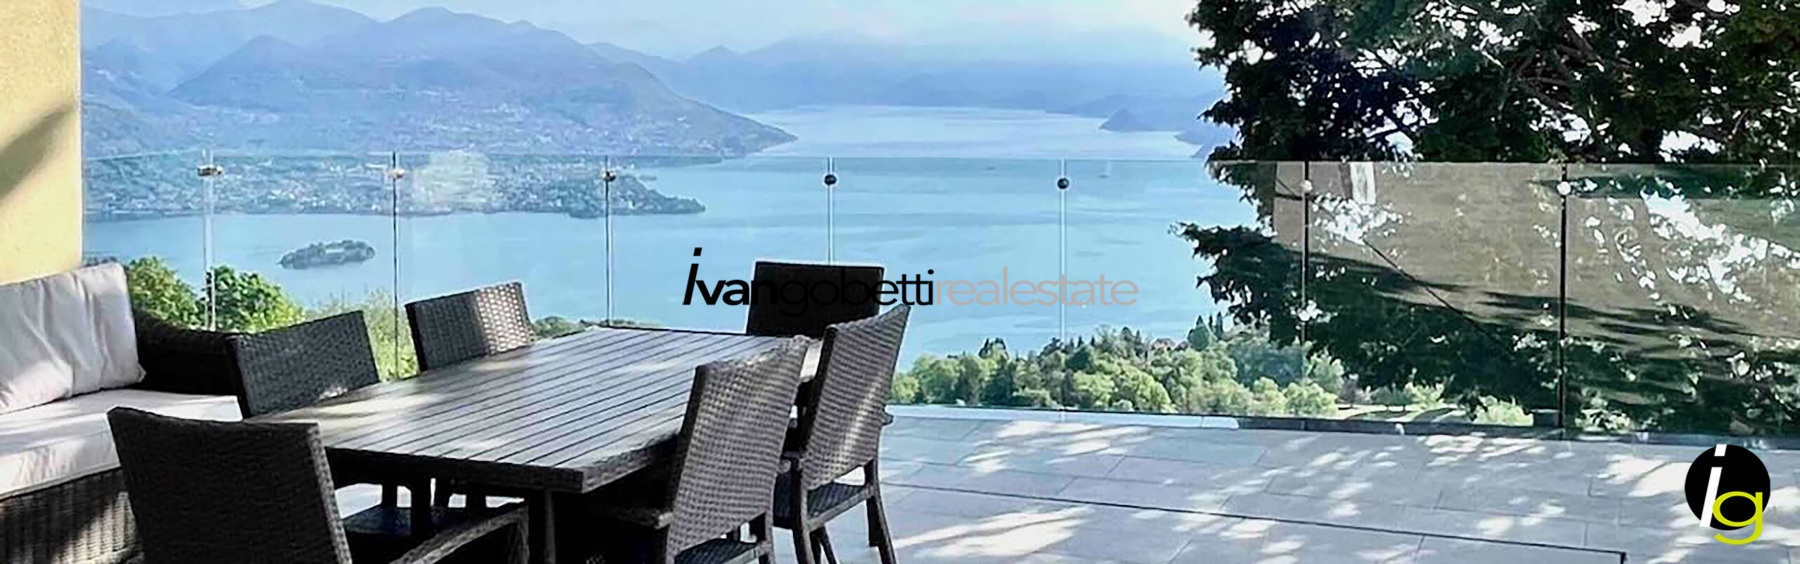 Luxuriöse moderne Villa mit herrlichem Seeblick und Swimmingpool auf den Hügeln des Lago Maggiore in Stresa<br/><span>Produktcode: 160123